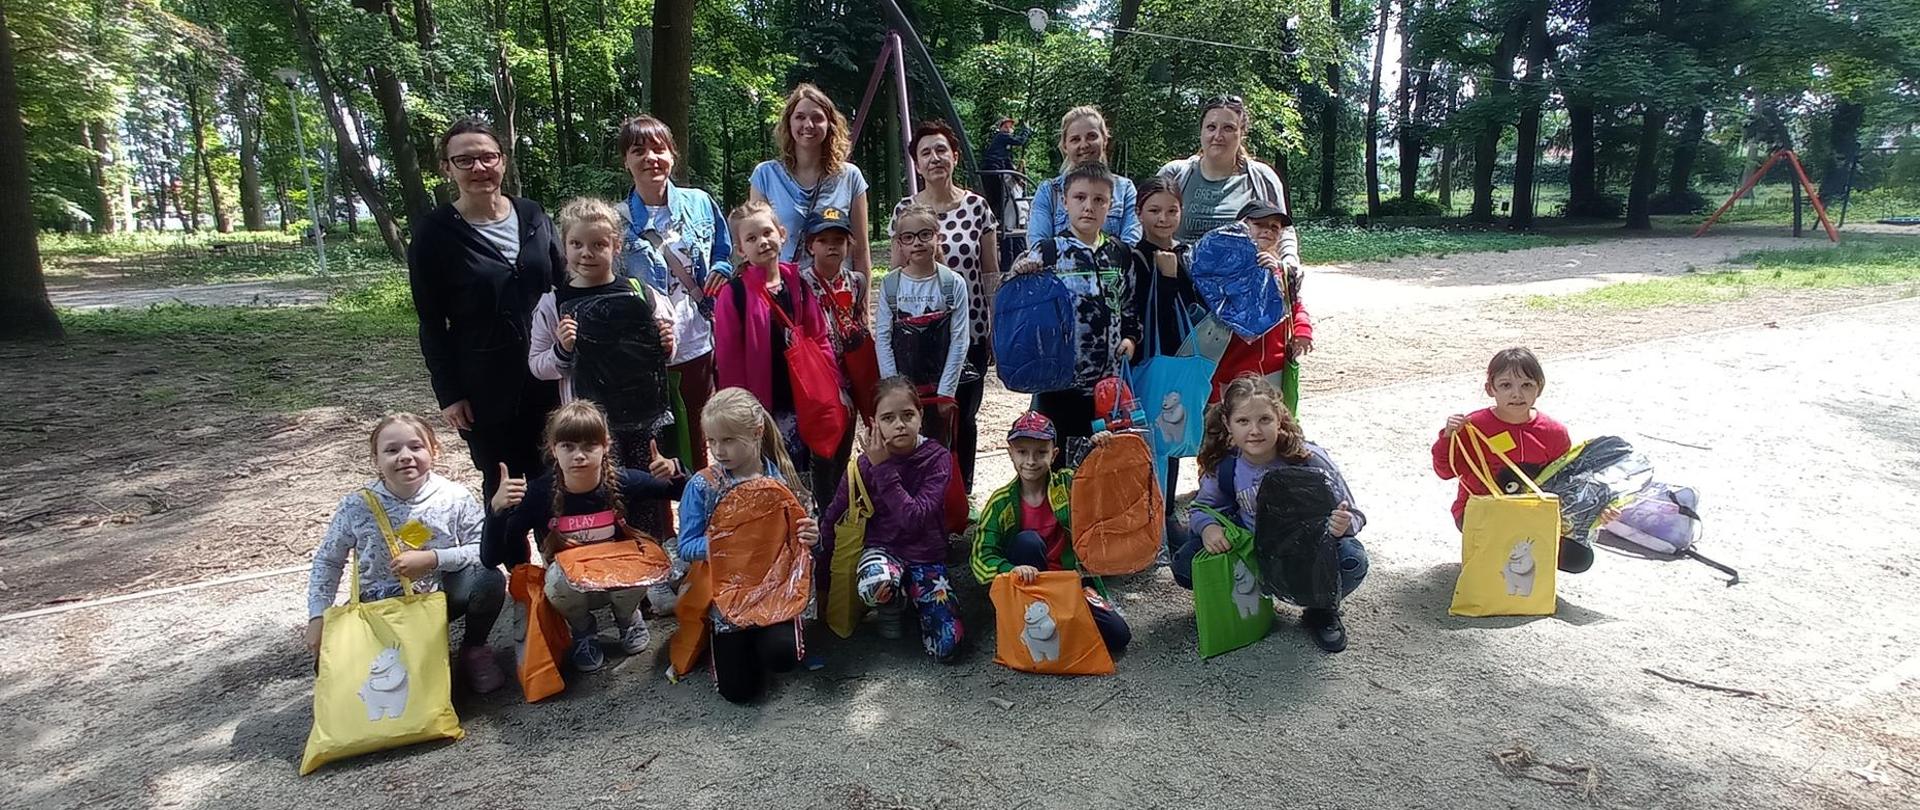 Grupa kilkanaściorga dzieci i sześć kobiet pozuje do zdjęcia w parku. Za ich plecami zielone drzewa. Dzieci trzymają w rękach kolorowe torby i plecaki. 